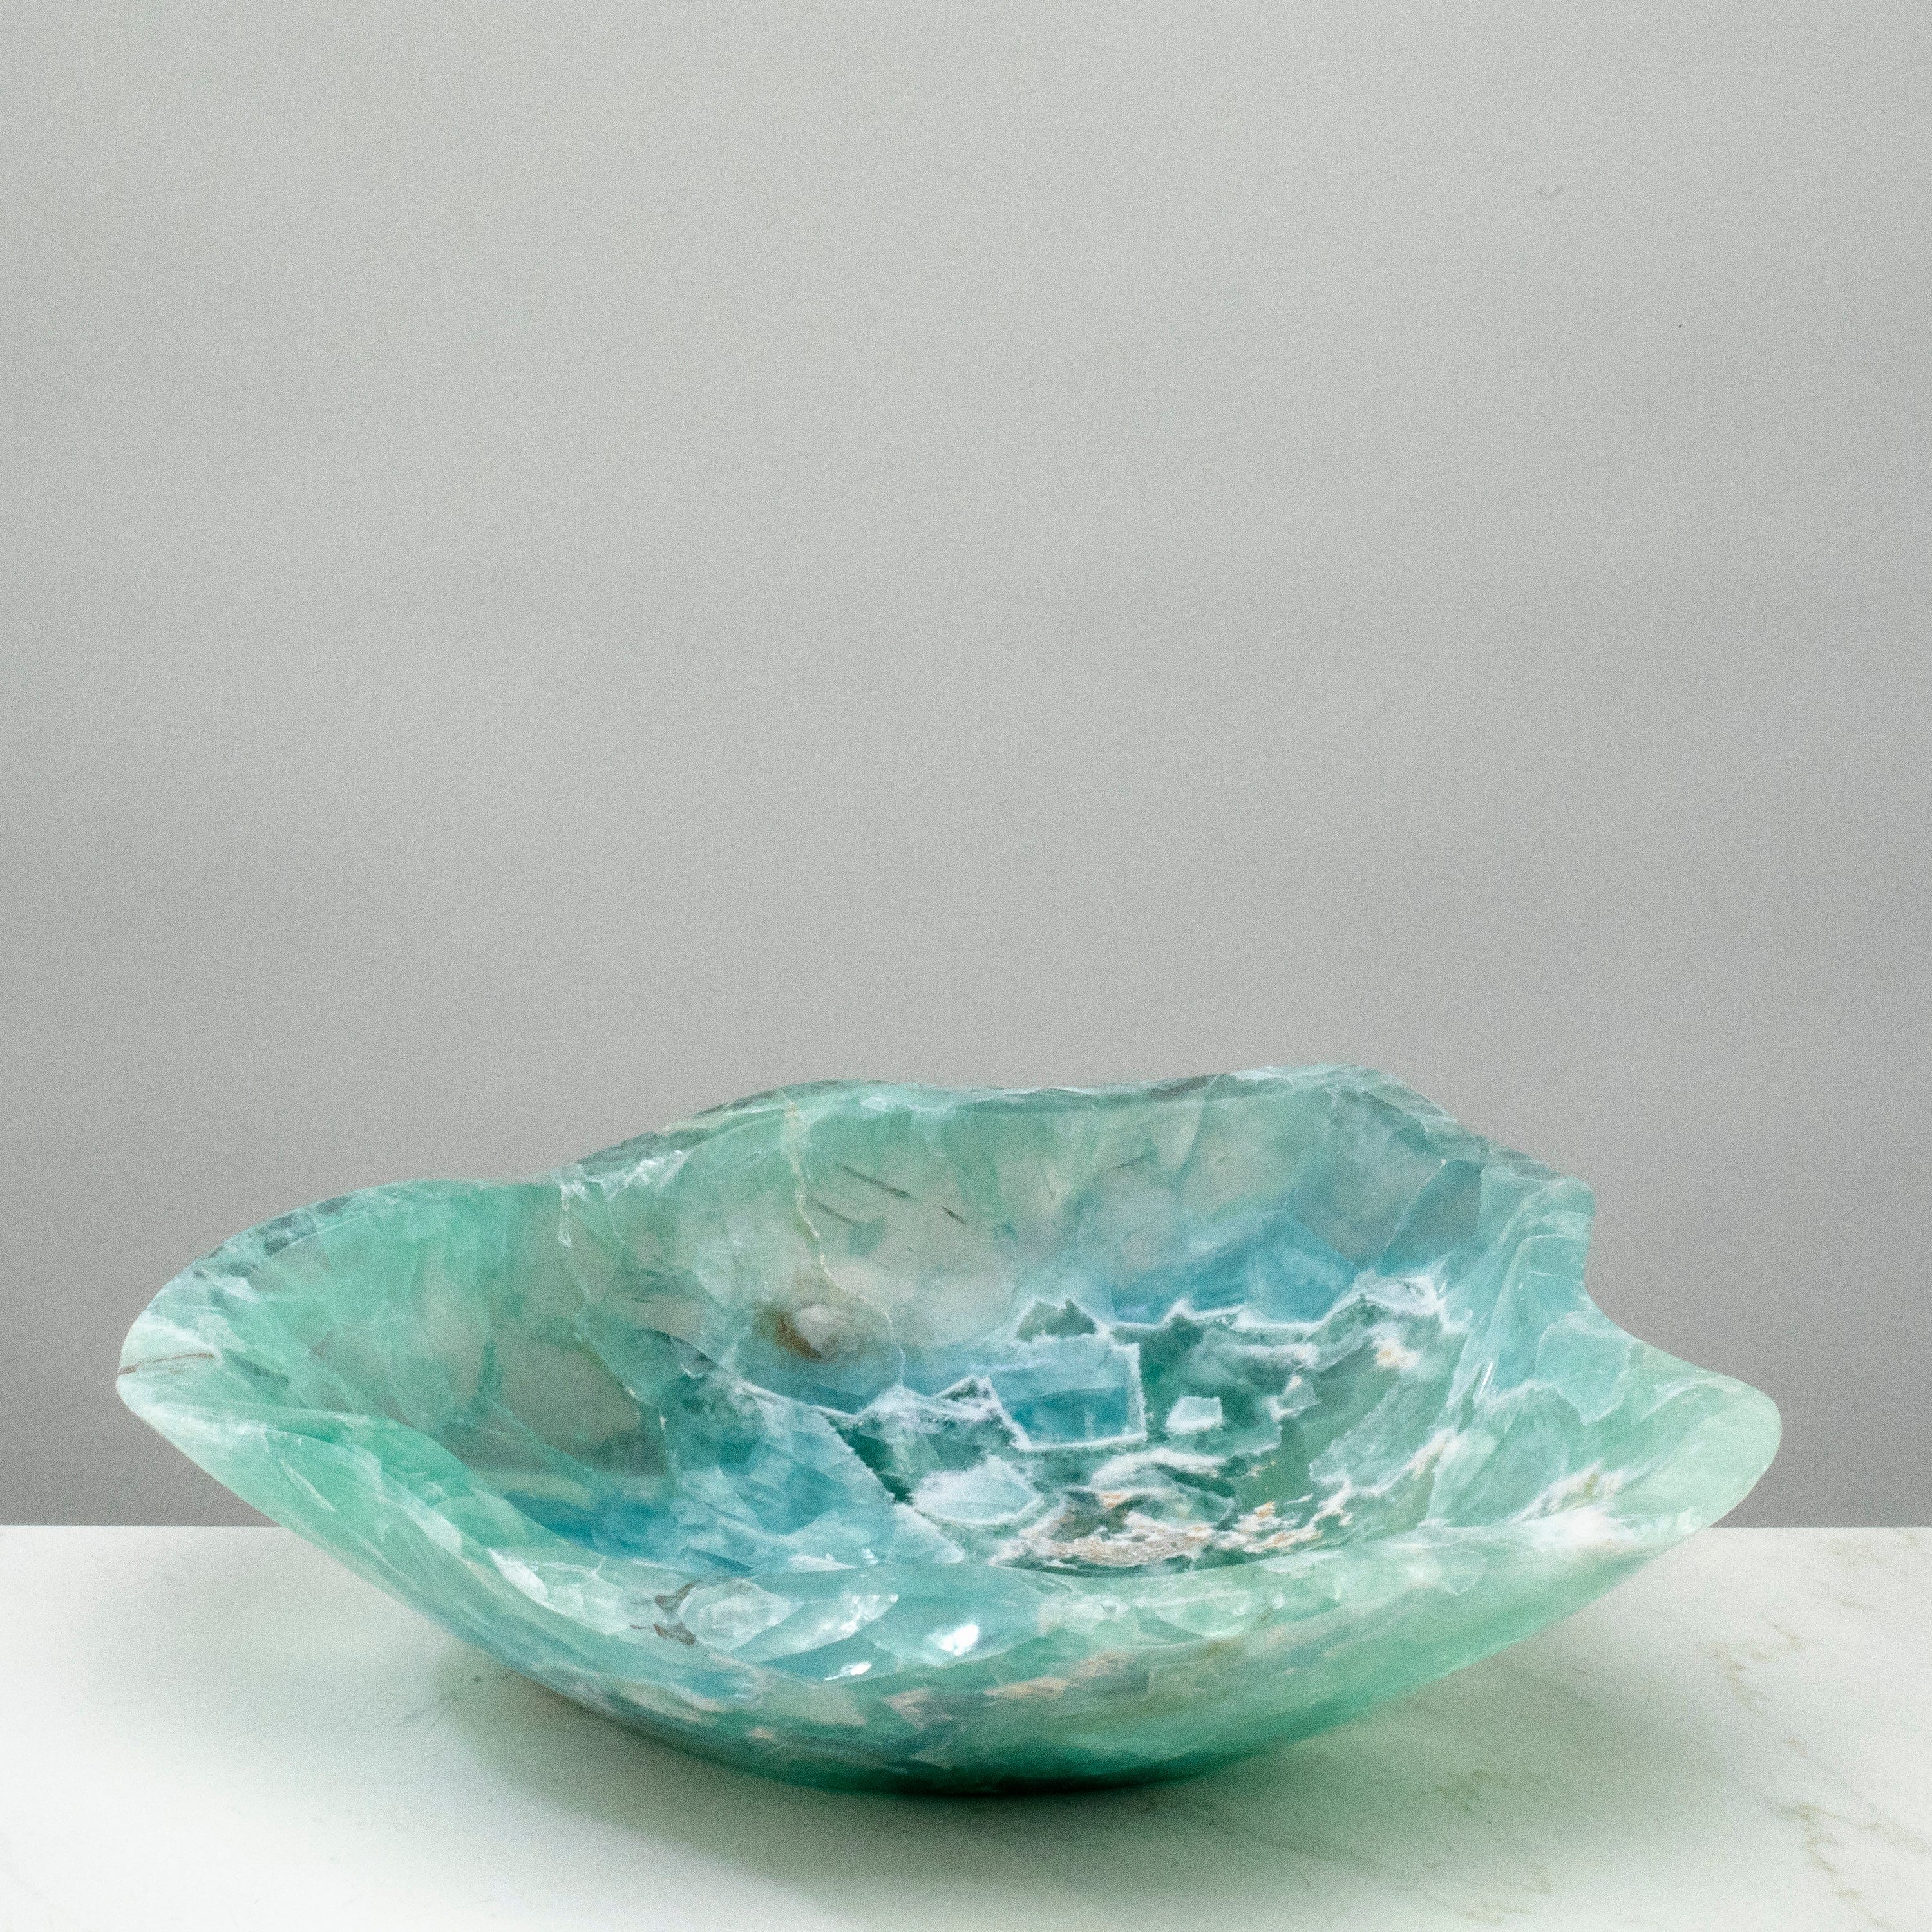 KALIFANO Gemstone Bowls Natural Blue / Green Fluorite Bowl 14.5" BFL7200.003